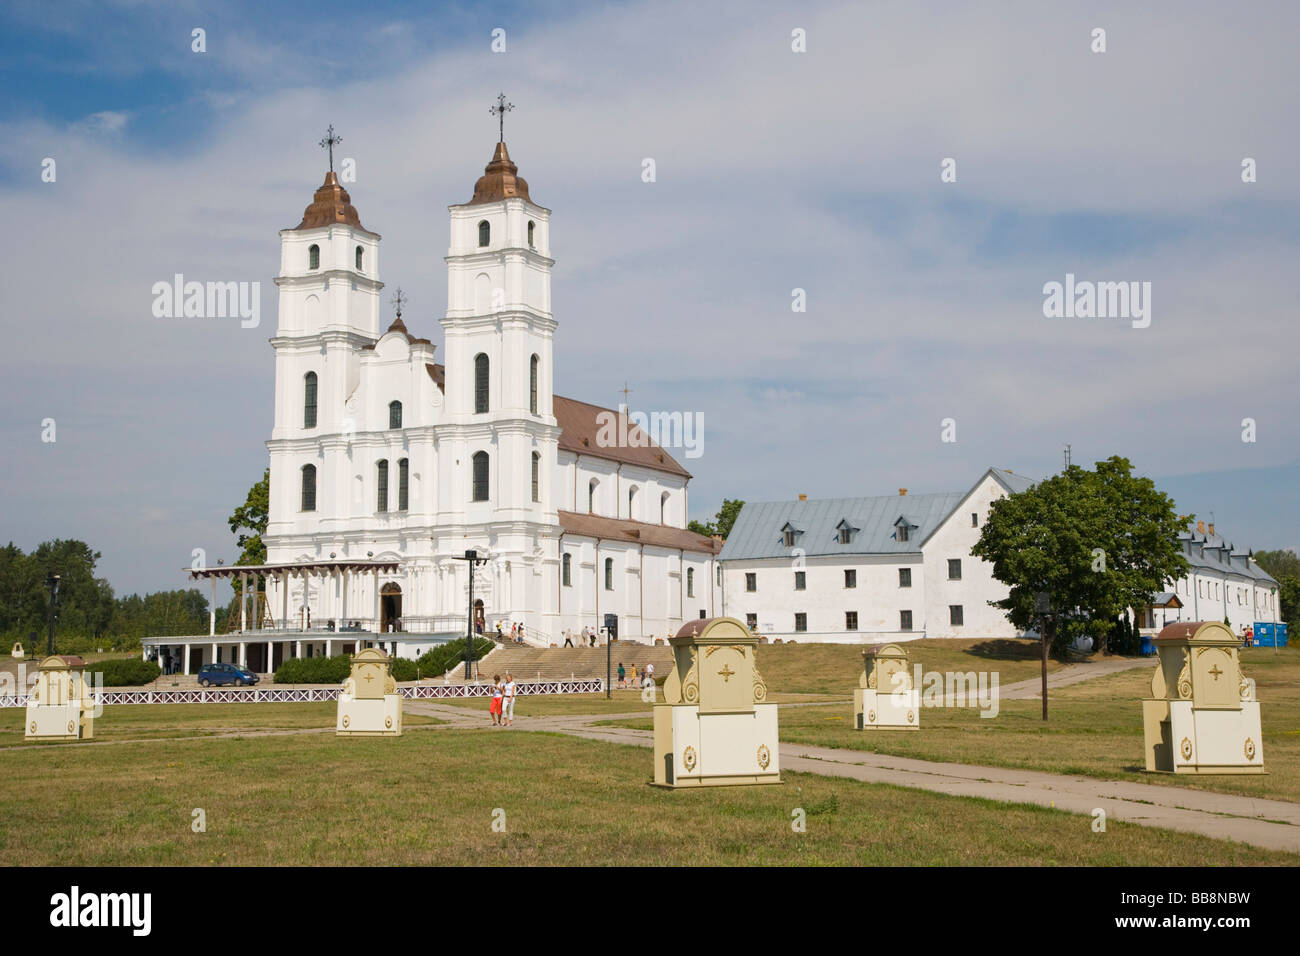 Aglona Basilica, Aglona, Latgalia, Latvia Stock Photo